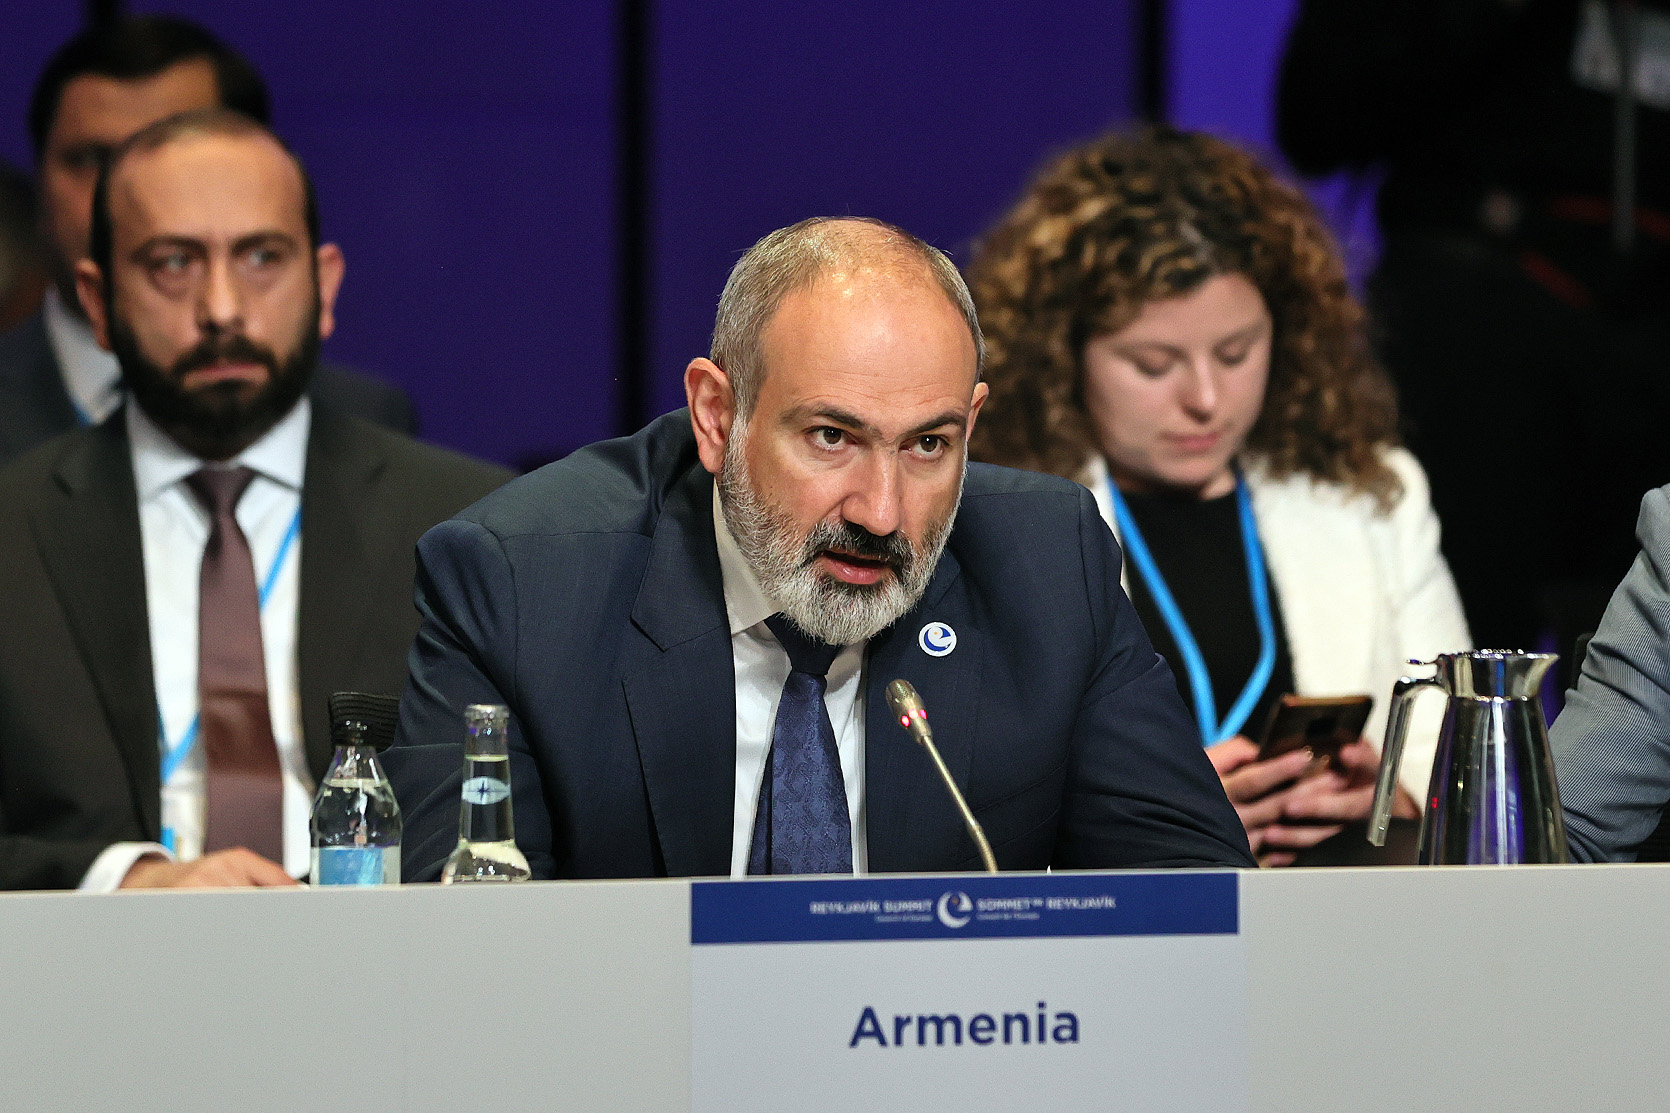 Три дня назад при посредничестве председателя Европейского совета мы сделали еще один шаг вперед, подчеркнув, что Армения признает территорию Азербайджана в рамках 86,6 тыс квадратных километров։ Пашинян